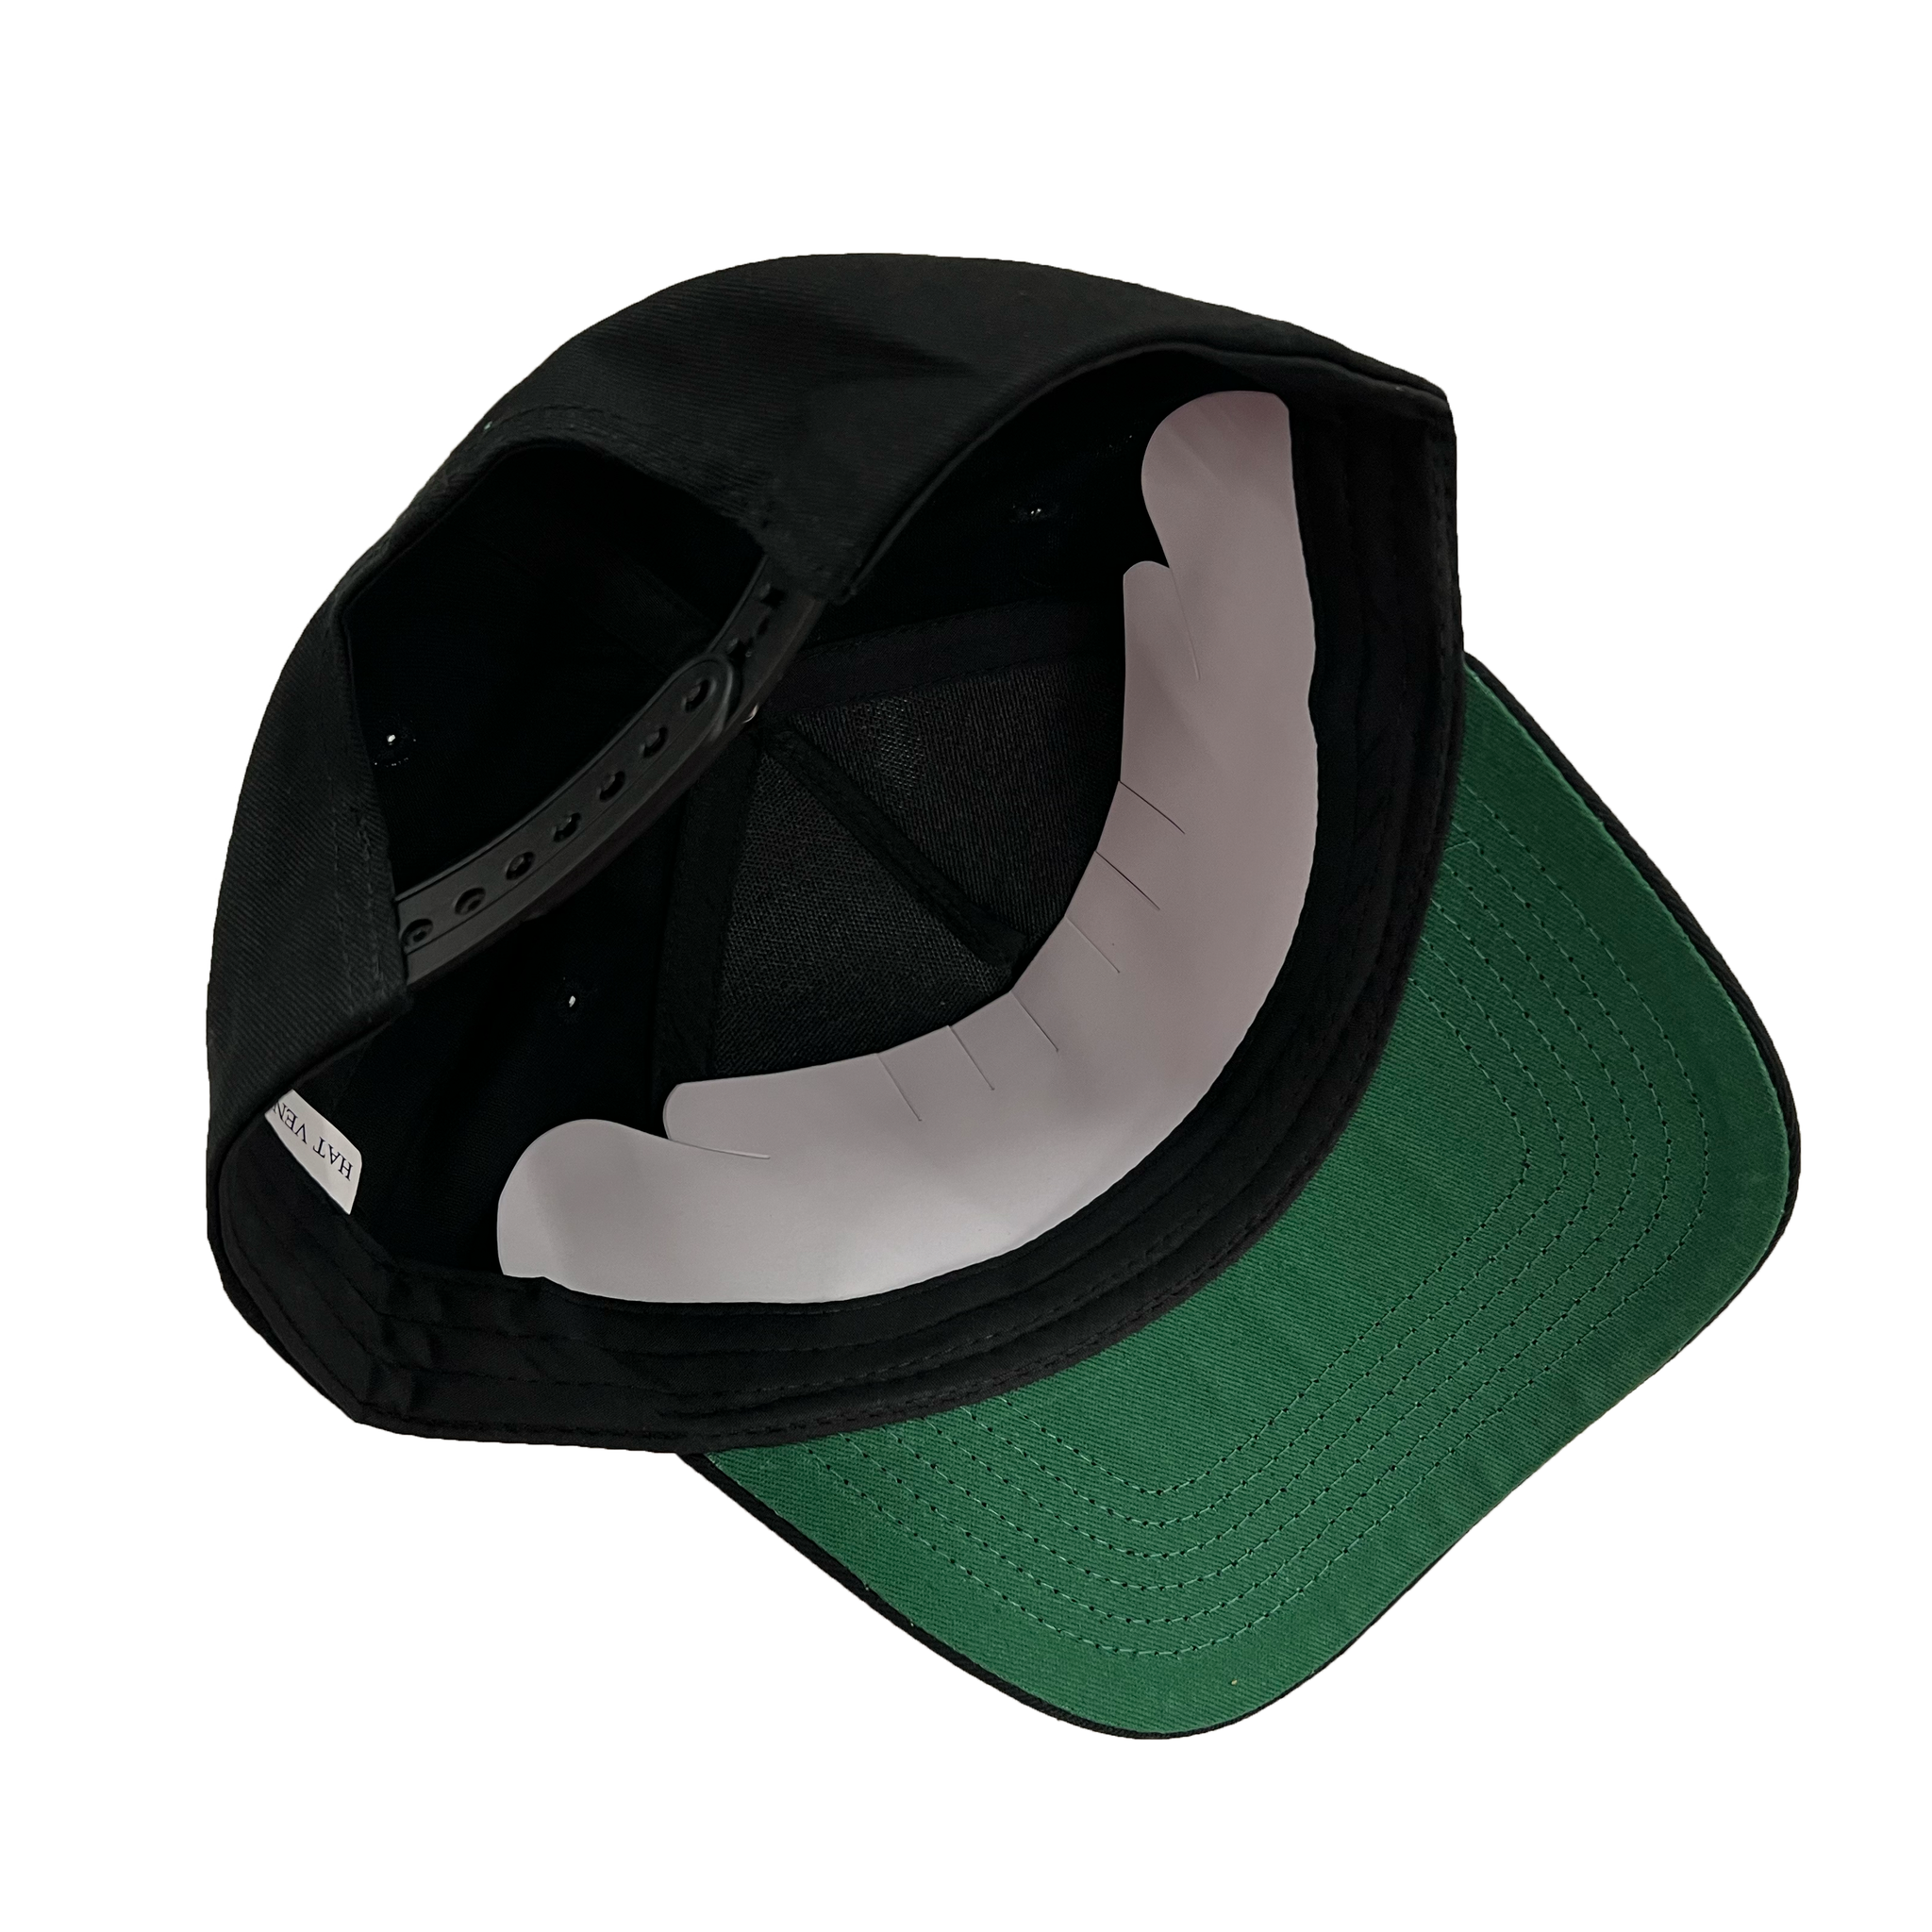 K-Frame Different Color Under Brim Baseball Hats